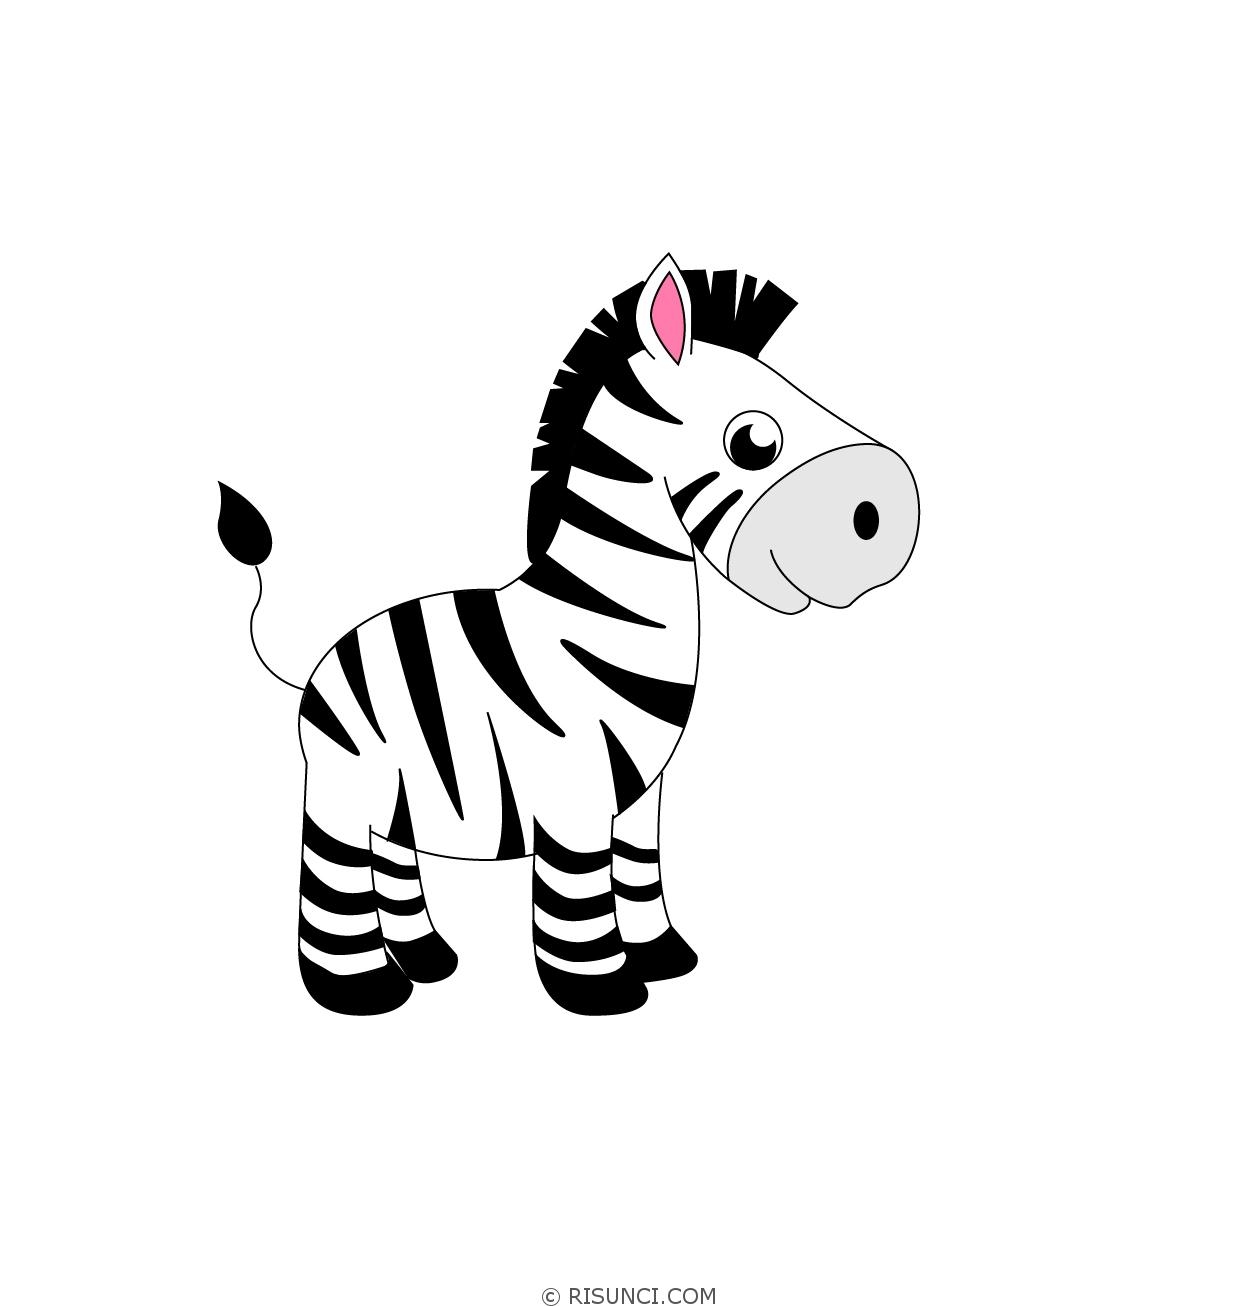 Фото по запросу Иллюстрация зебры детей